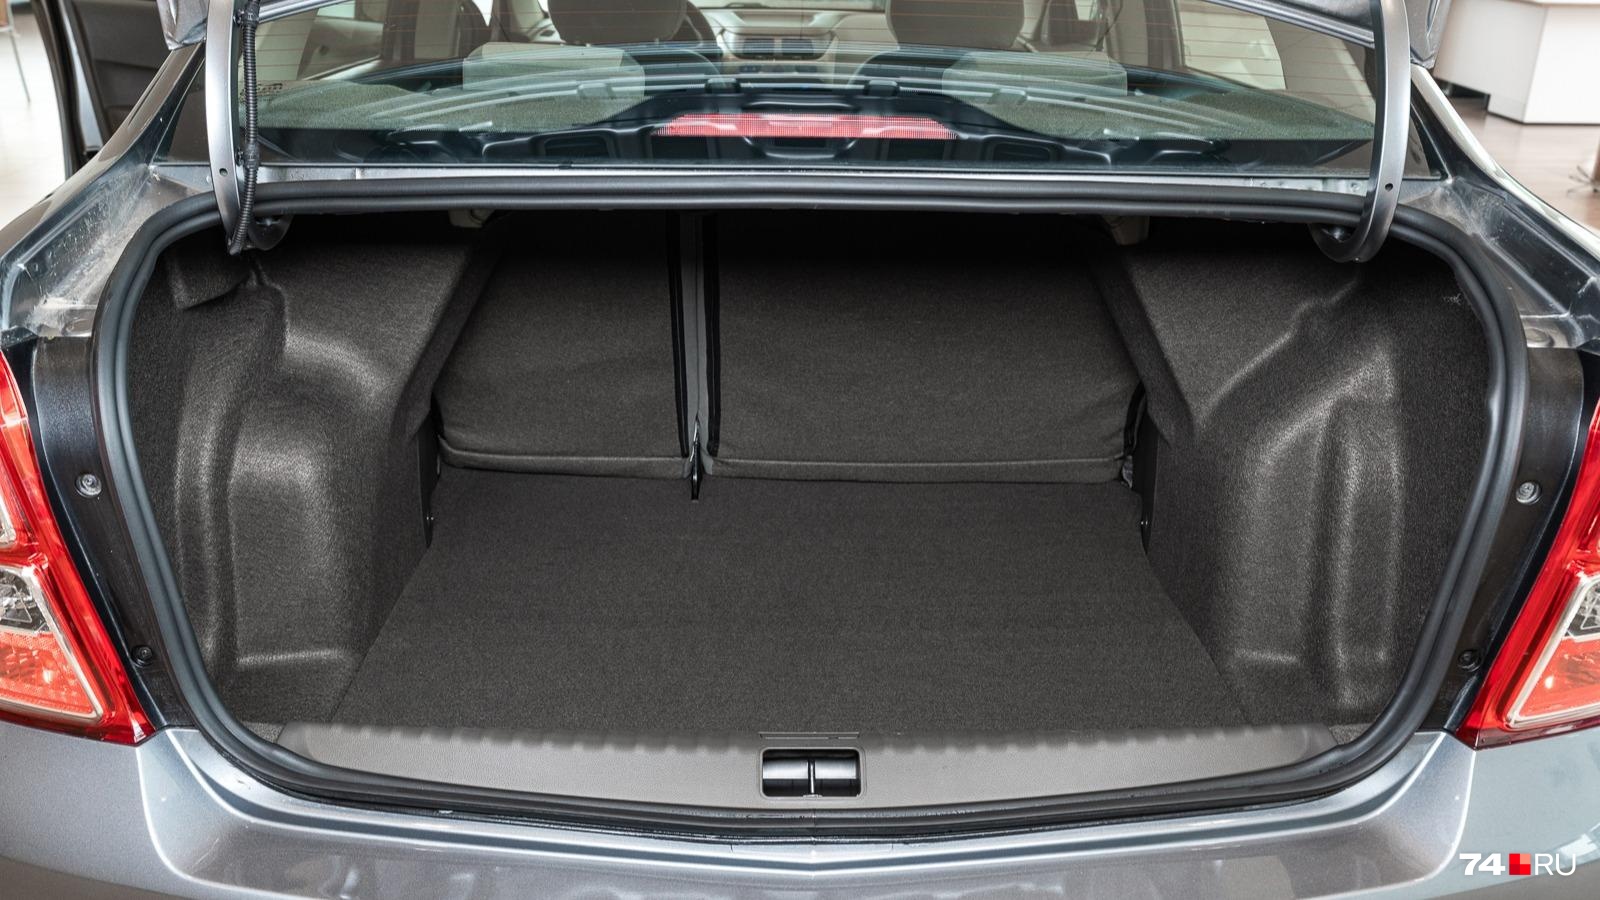 Огромный багажник имеет сложную форму, что осложняет перевозку крупногабаритов. Спинки задних сидений складываются